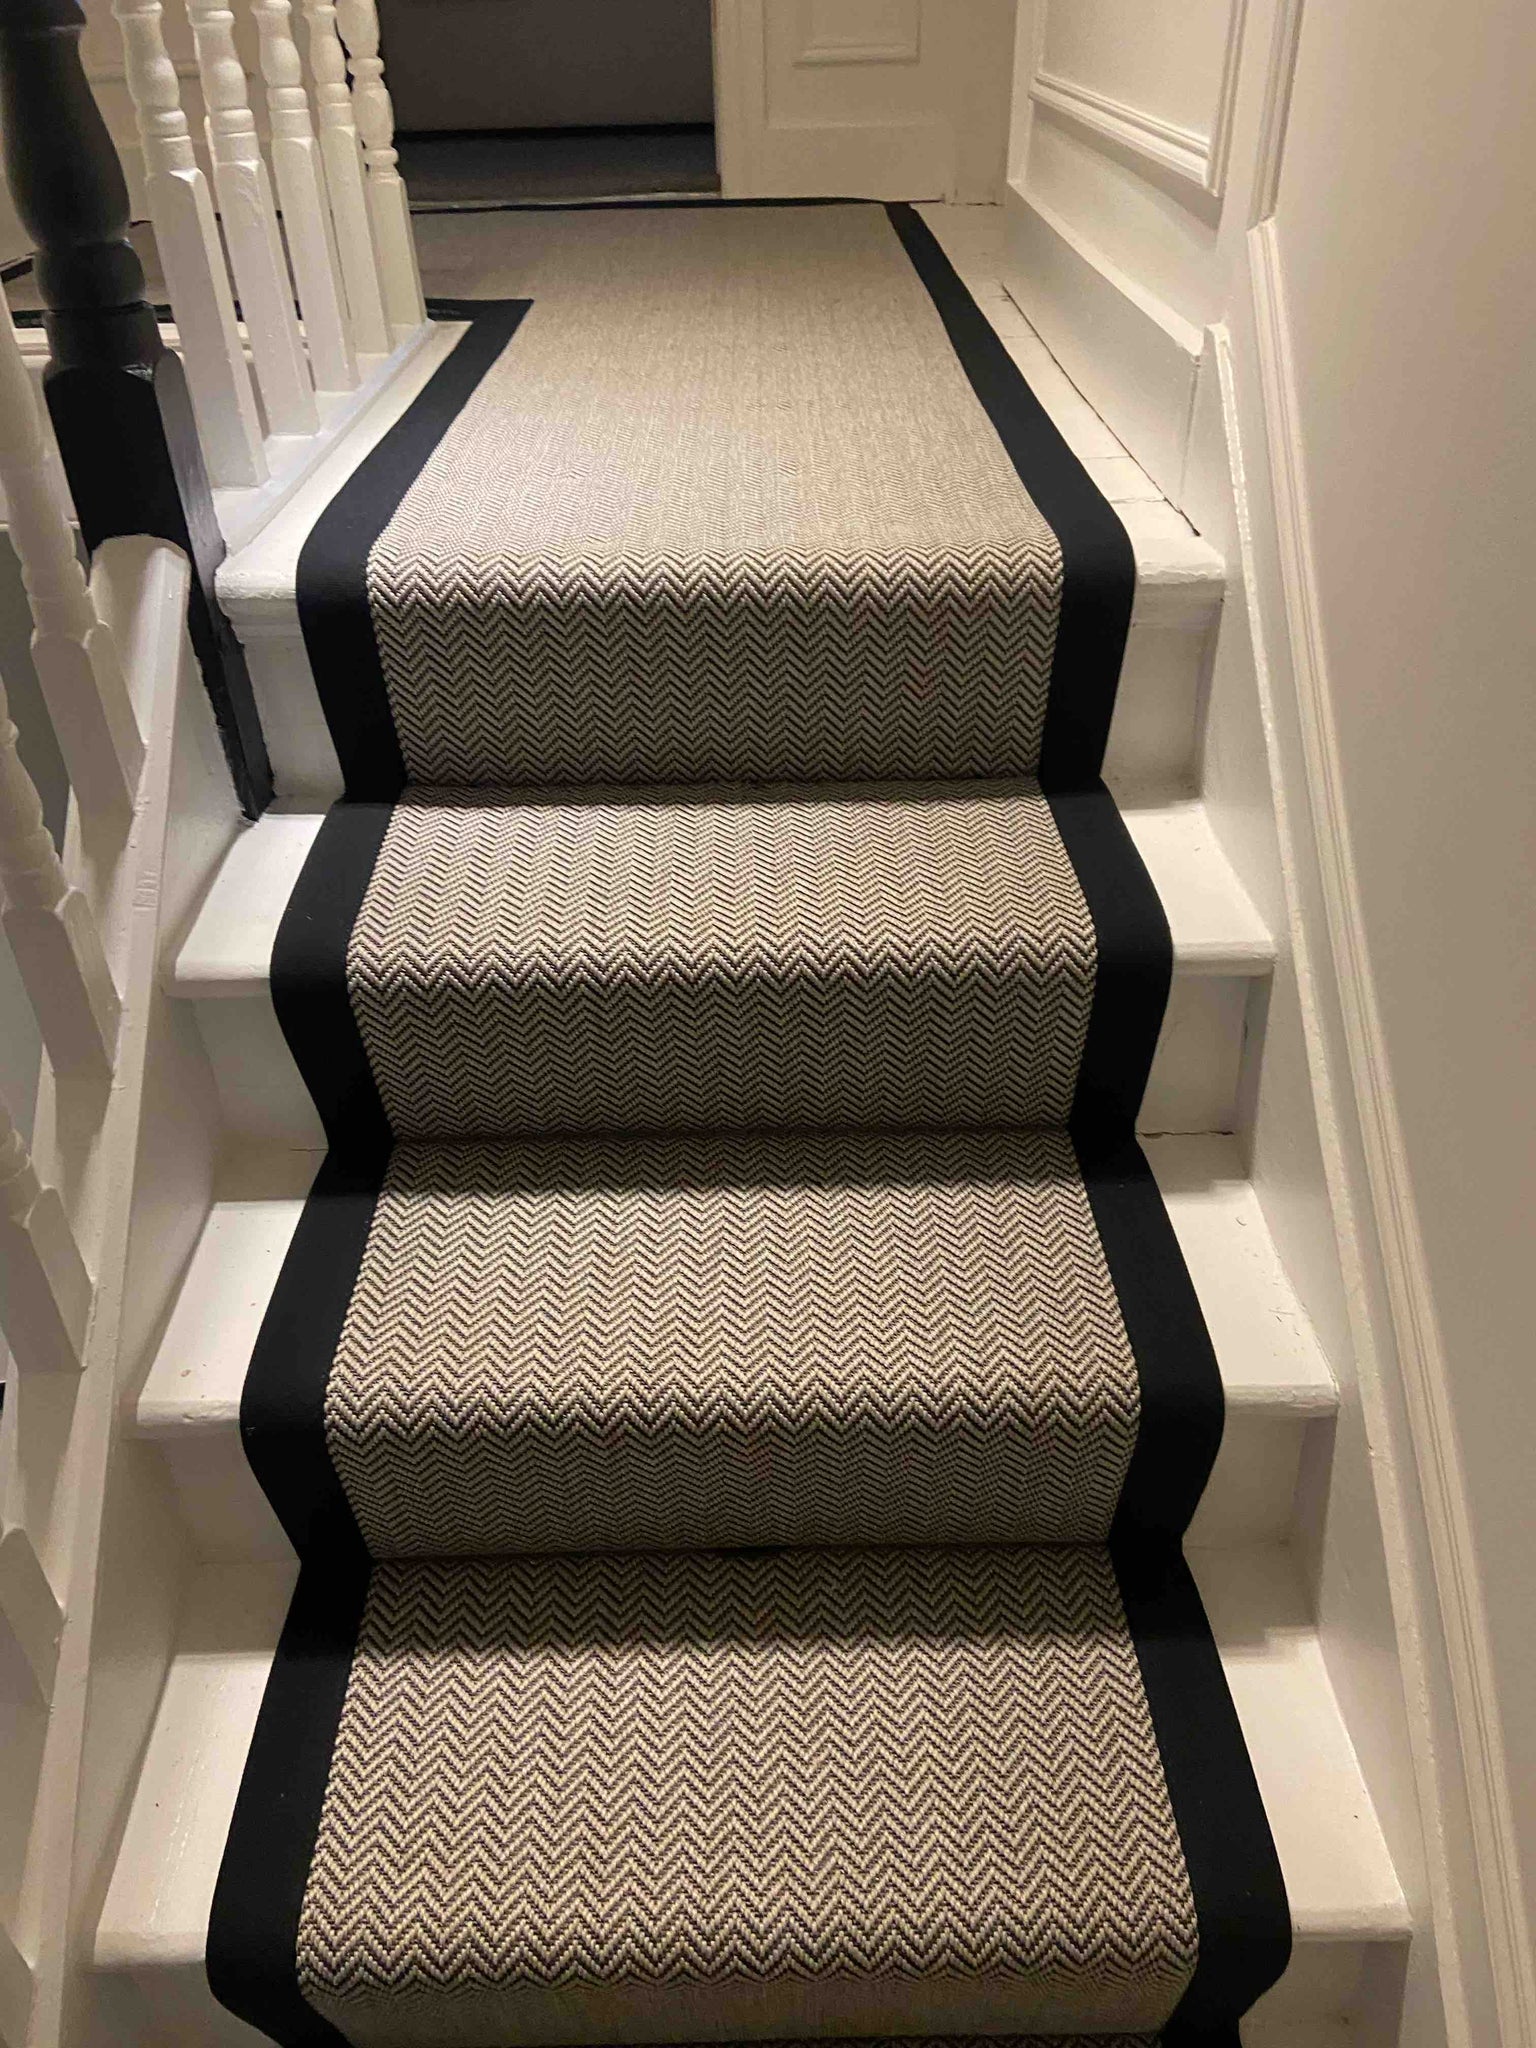 Black and White Herringbone Faux Sisal Carpet Stair Runner Black Cotton border